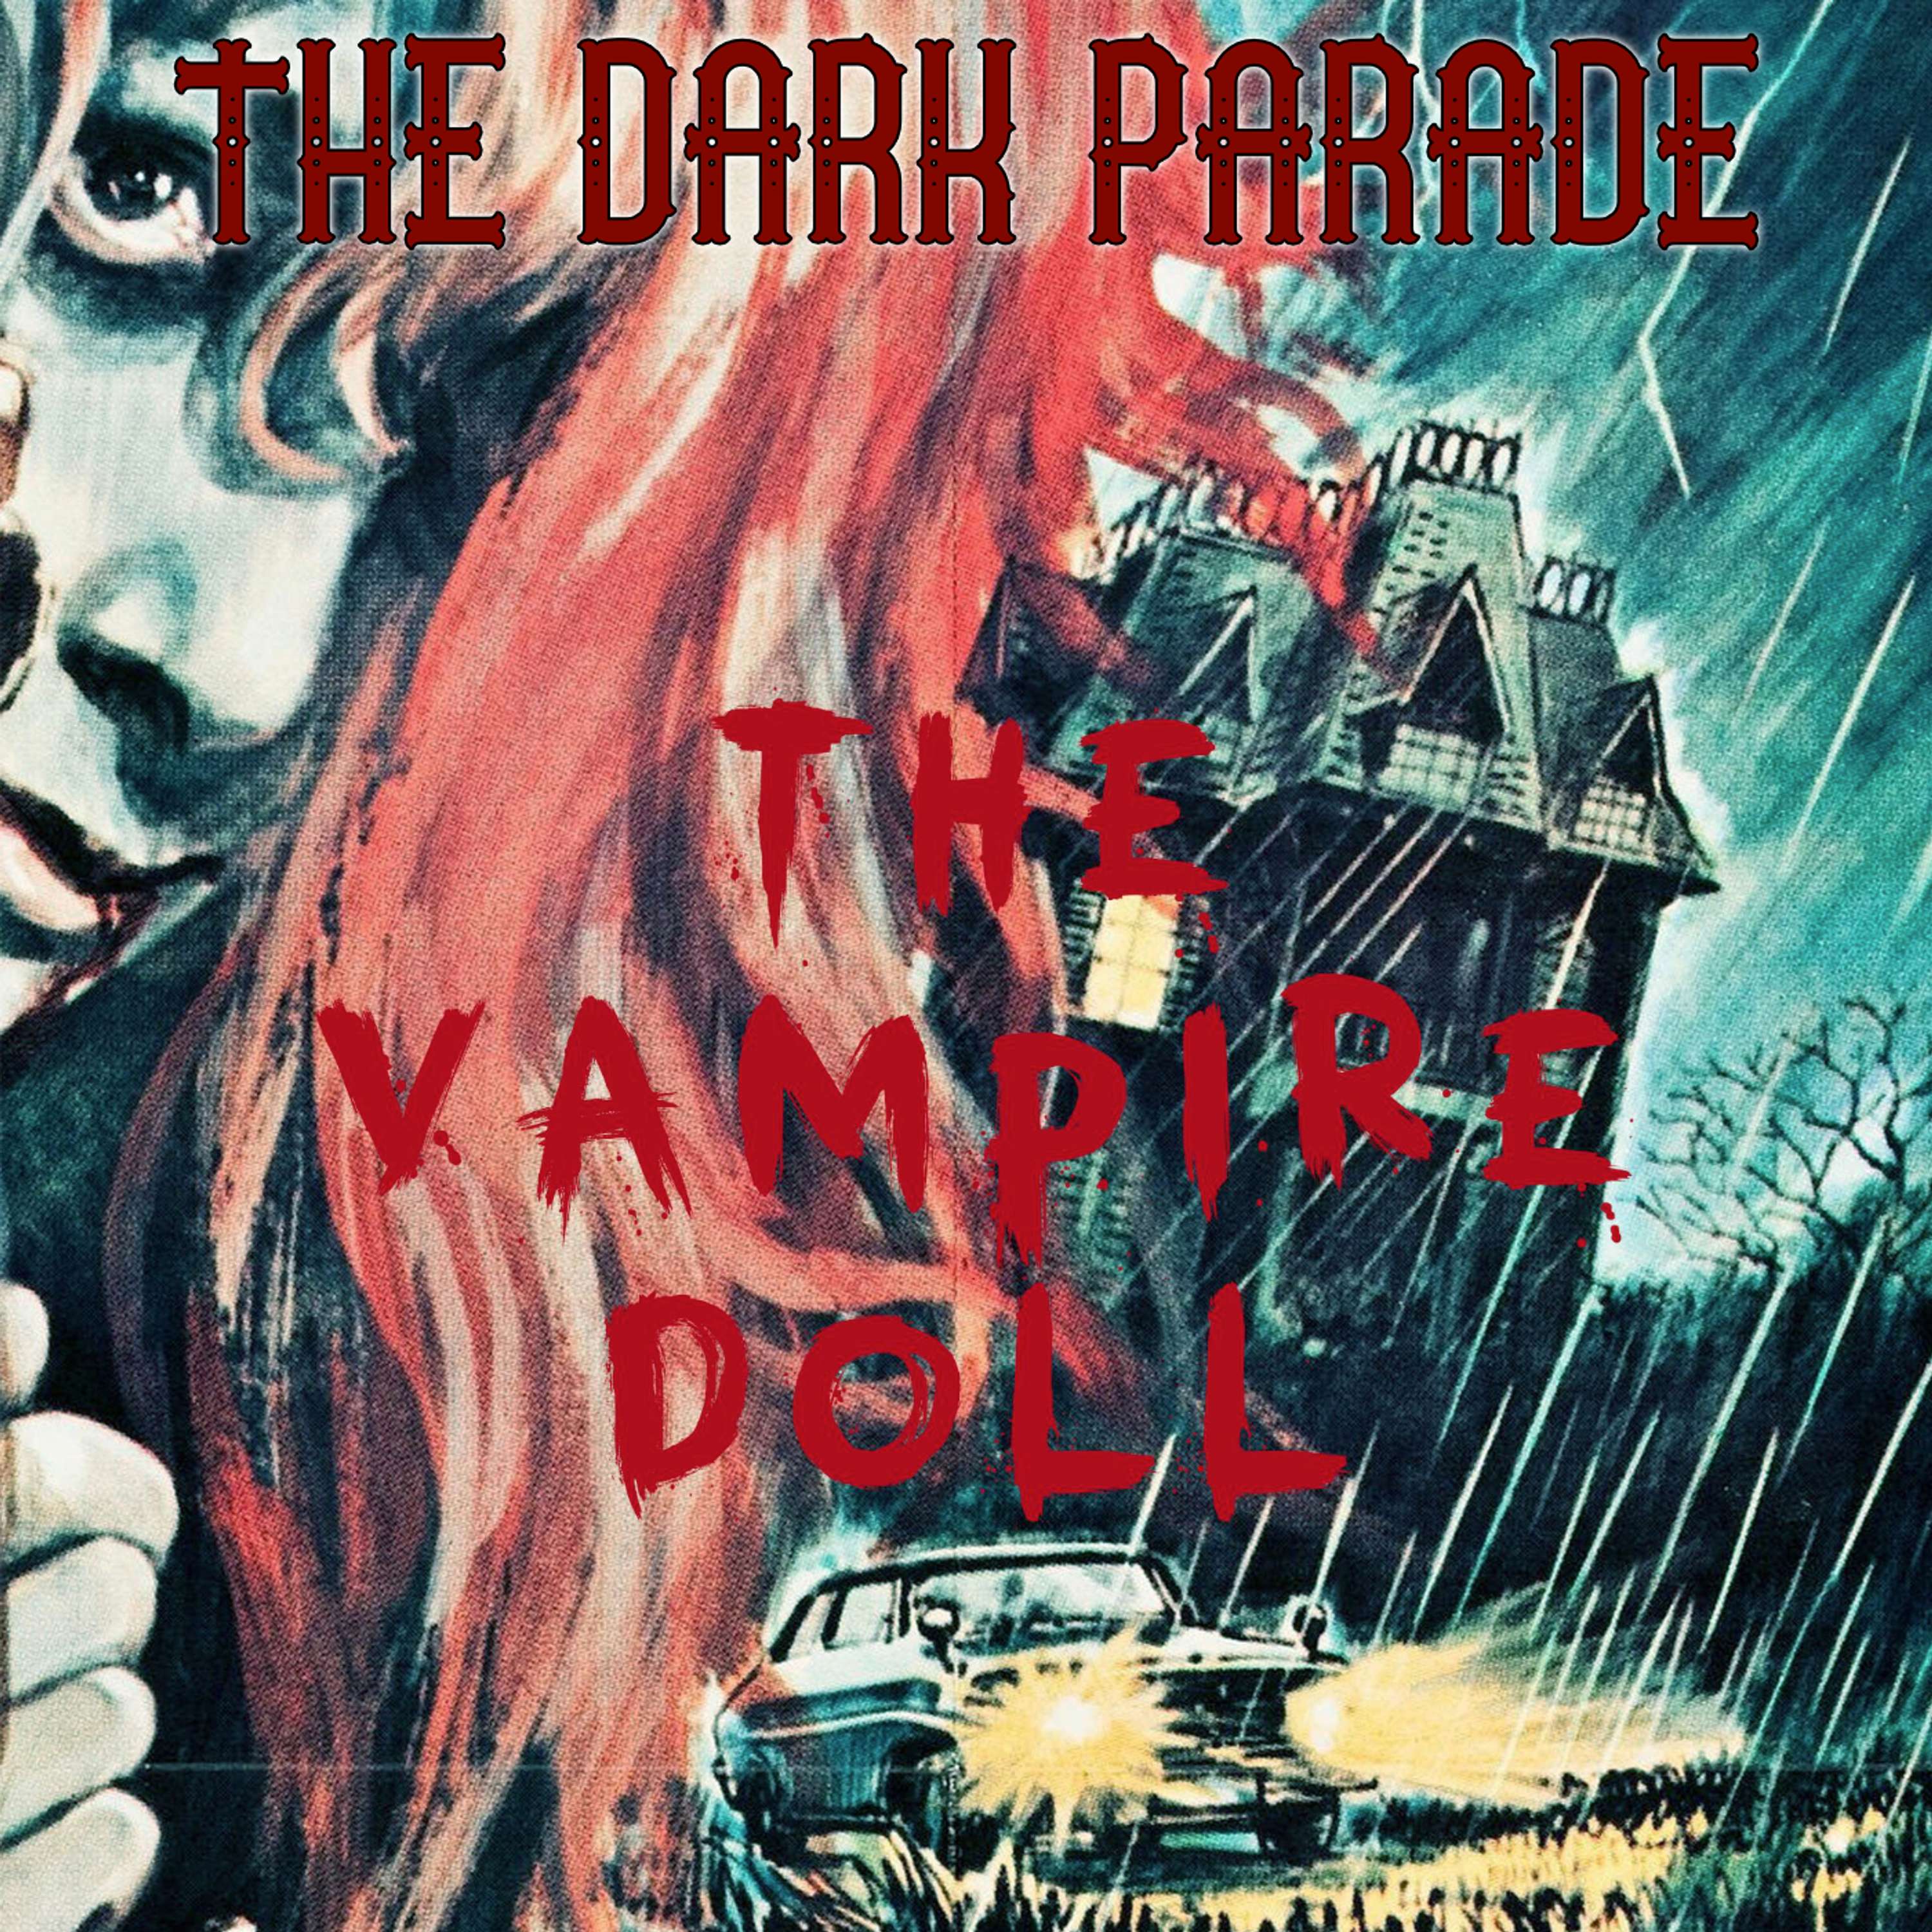 The Dark Parade #21: The Vampire Doll